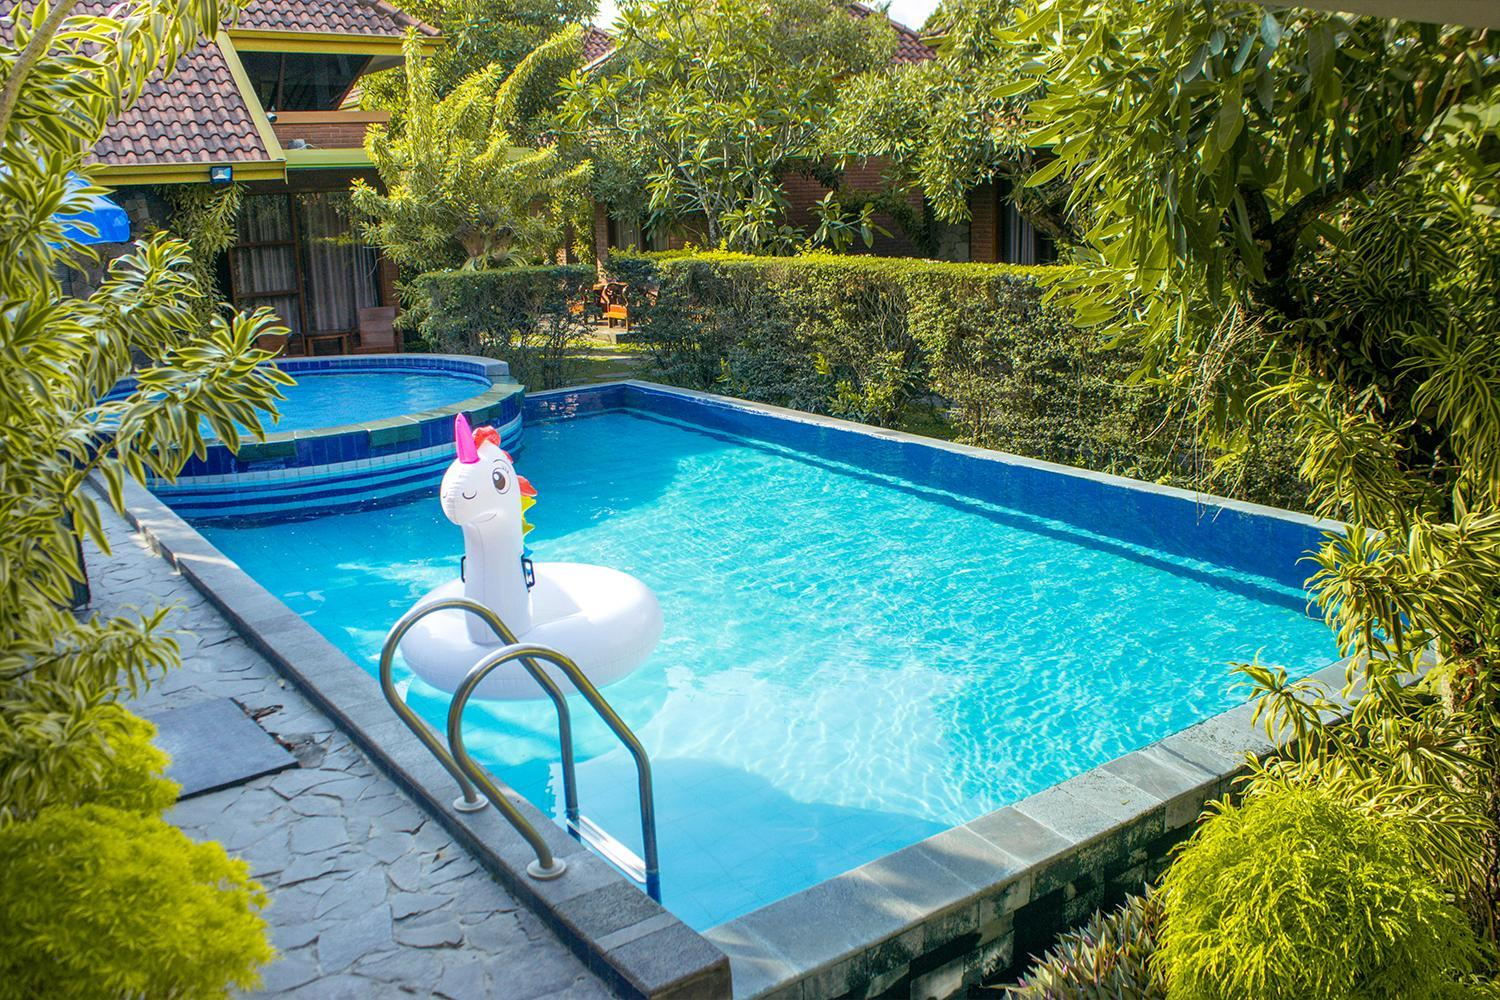 Rumput Hotel Resort & Resto Yogyakarta, Yogyakarta